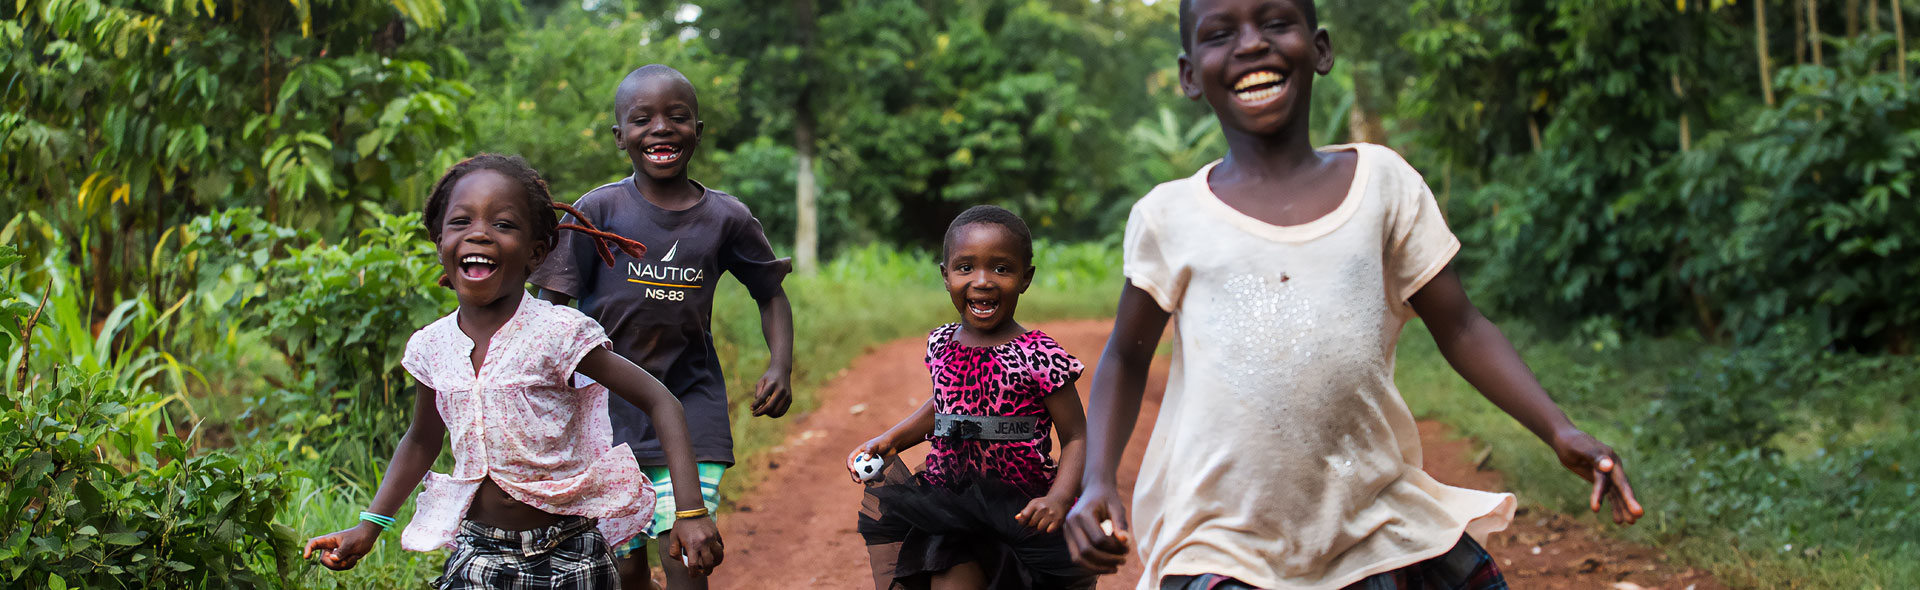 OJC-Weltweit: Fröhliche Kinder rennen auf die Kamera zu